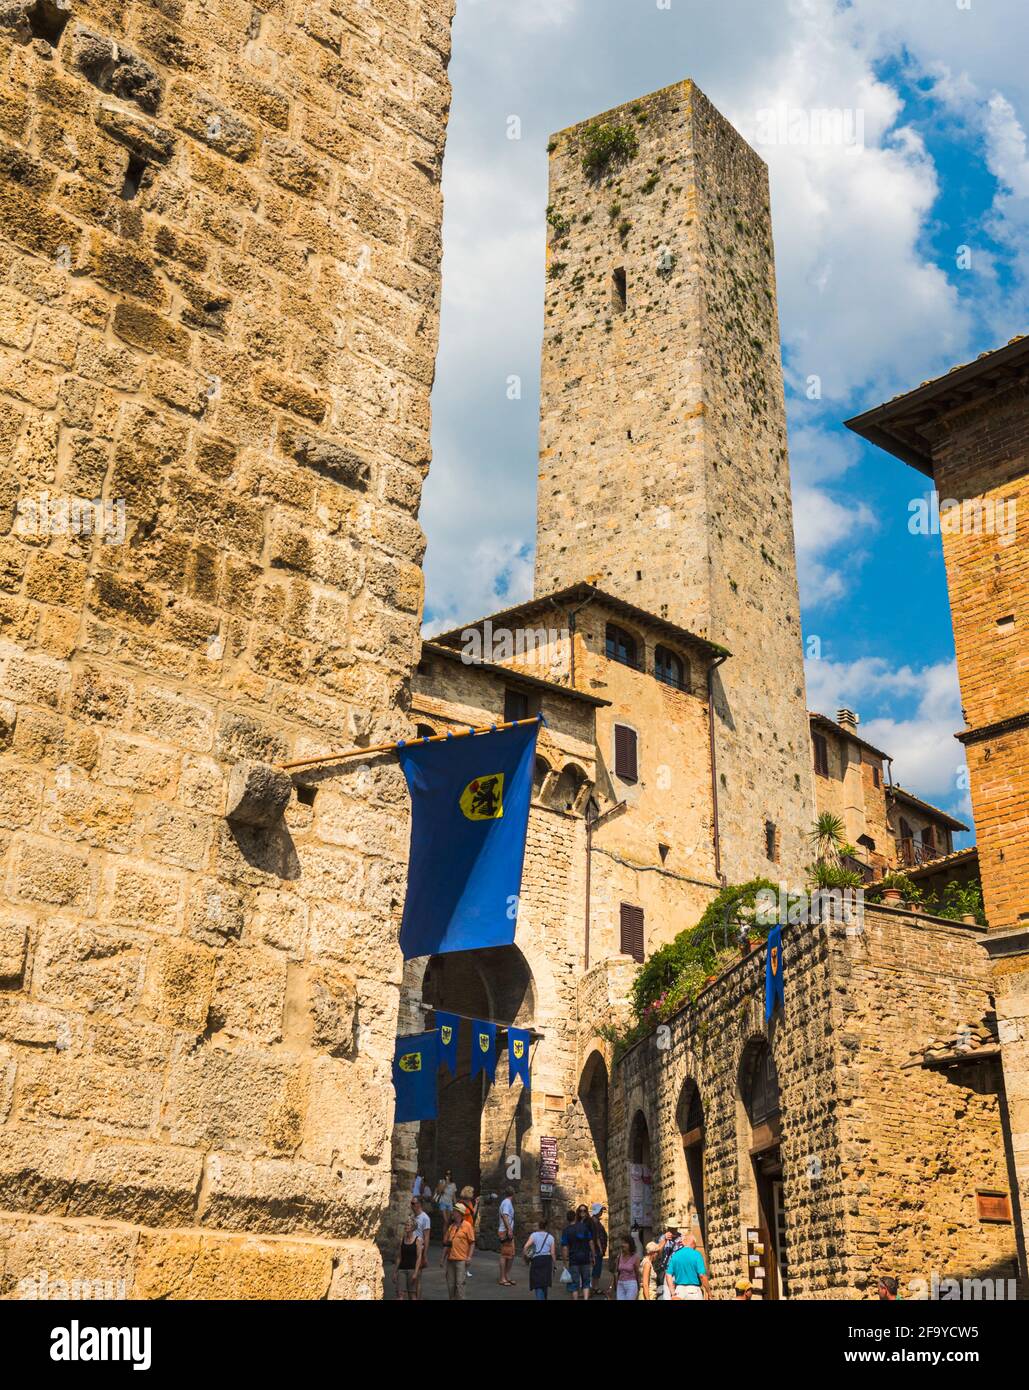 San Gimignano, province de Sienne, Toscane, Italie. Scène de rue typique. Le centre historique de San Gimignano est classé au patrimoine mondial de l'UNESCO. Banque D'Images